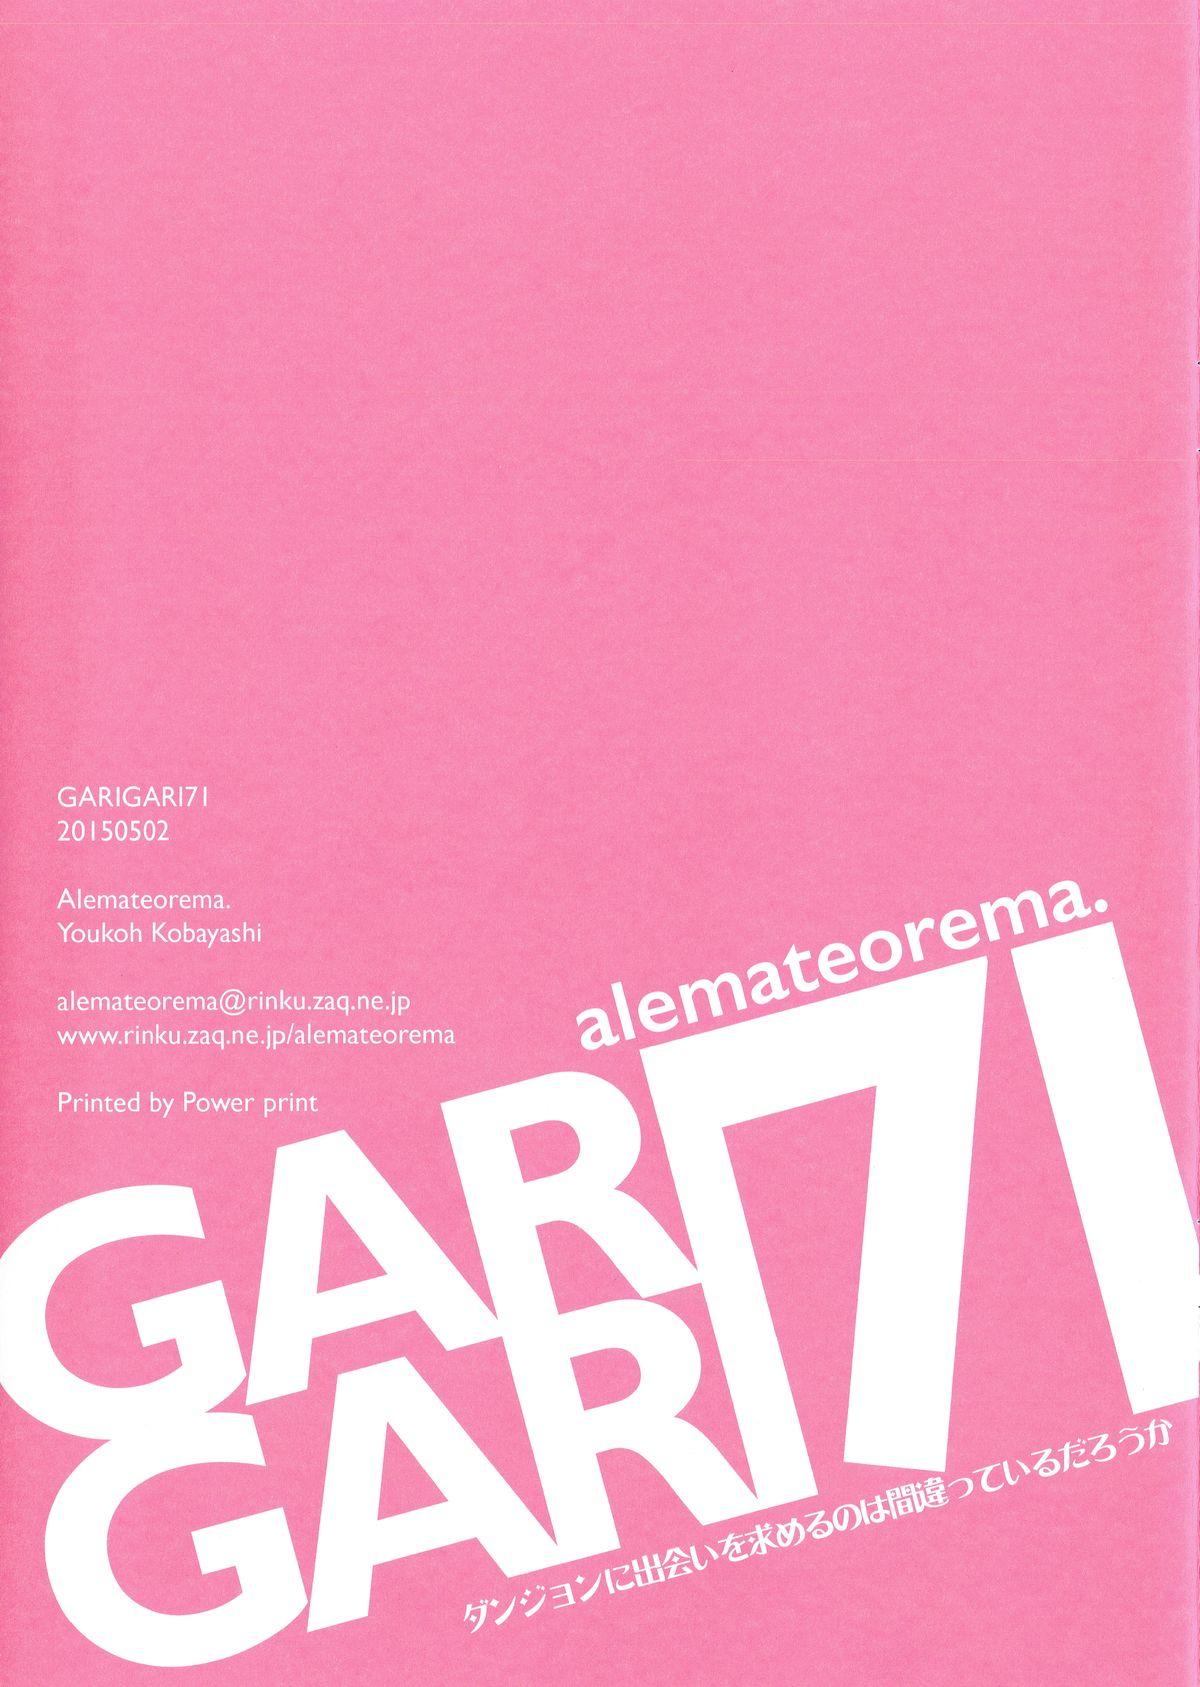 GARIGARI 71 14